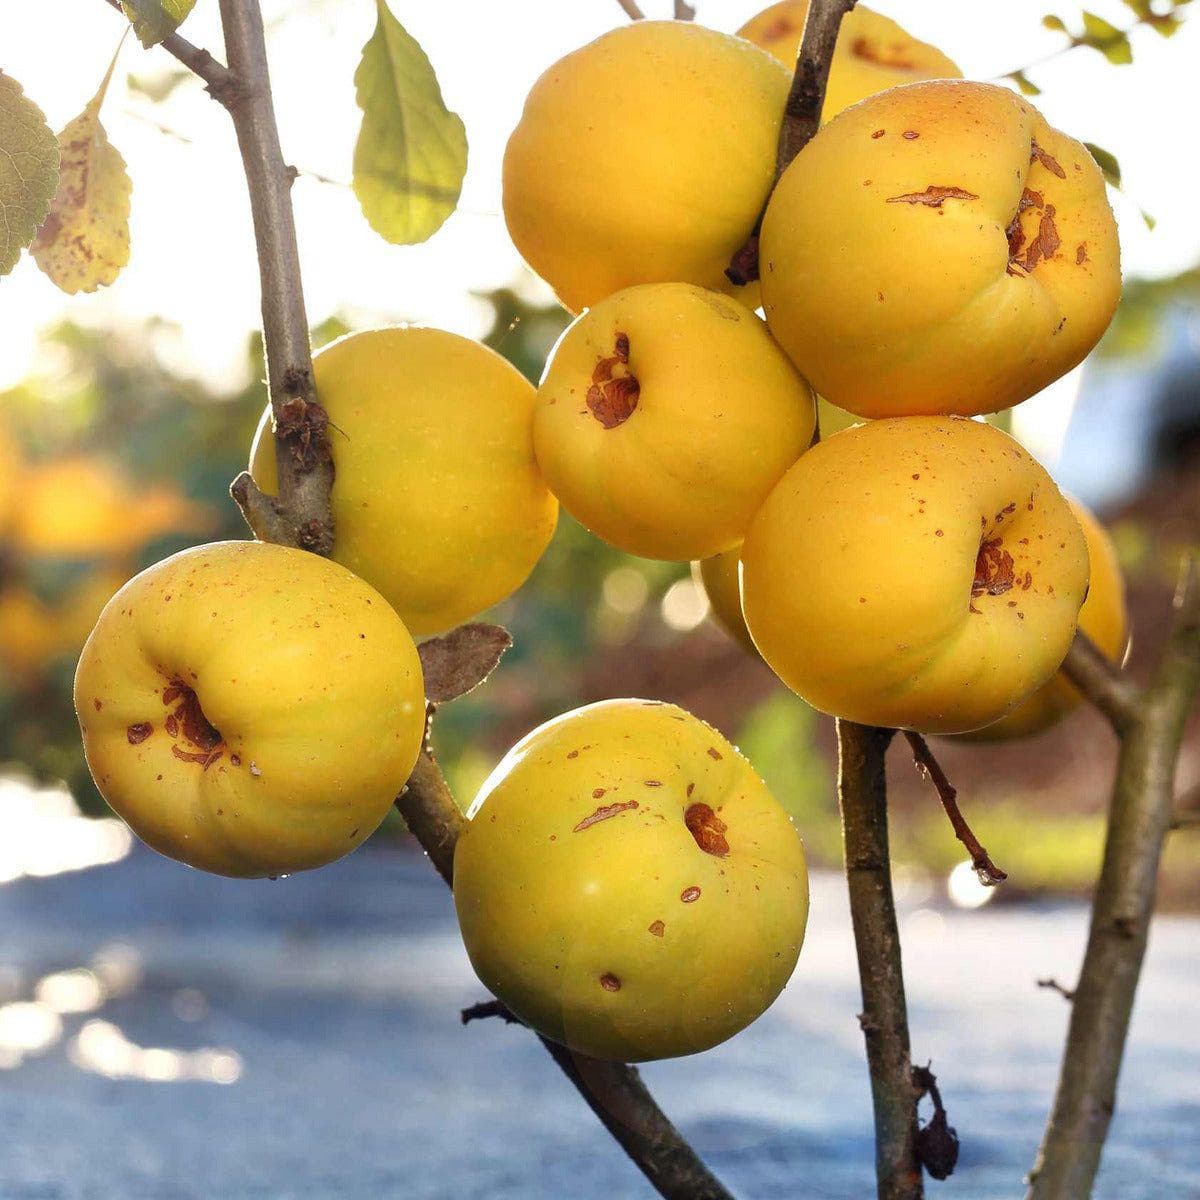 ackerbaum Japanische Zierquitte / Nordische Zitrone - Cido kaufen